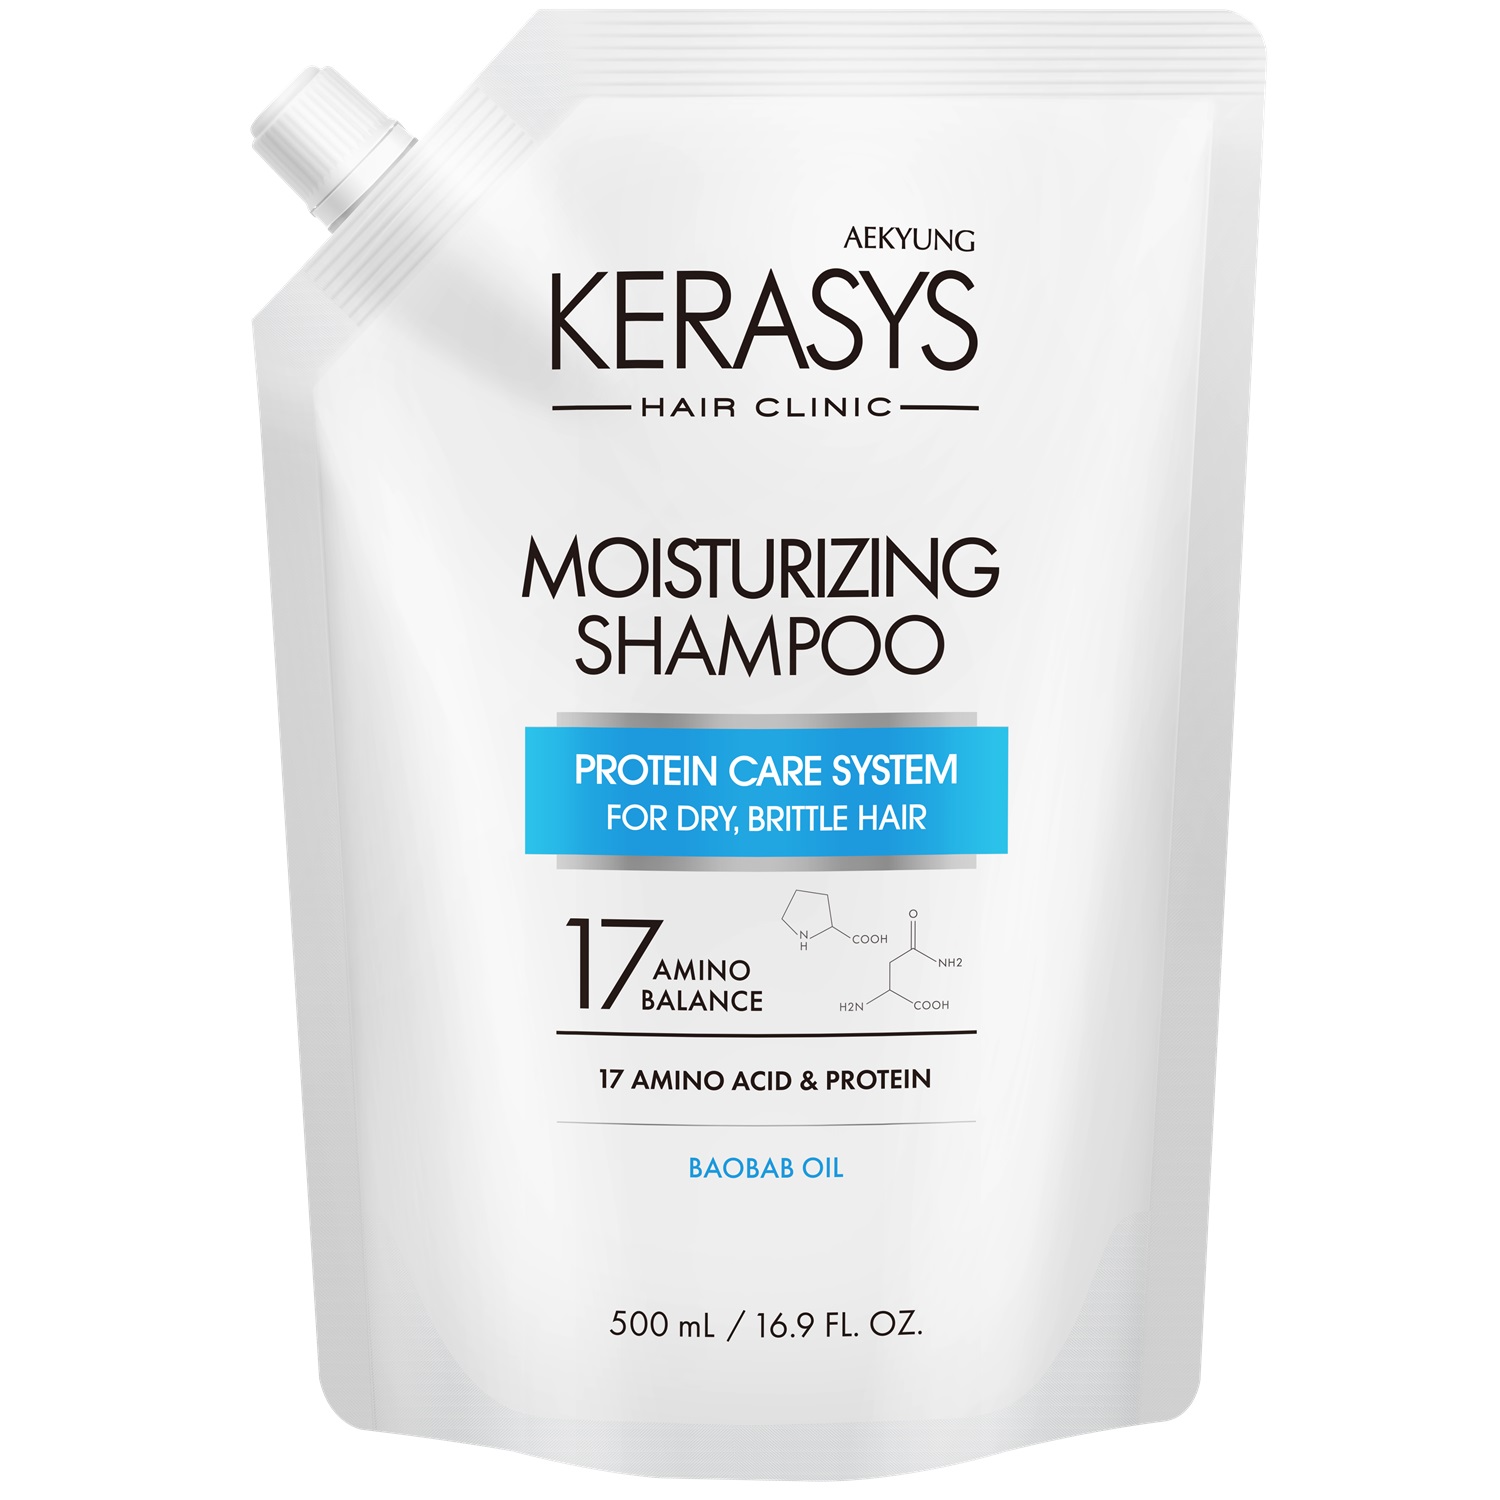 Kerasys Шампунь для волос увлажняющий, запасной блок 500 мл (Kerasys, Hair Clinic) шампунь kerasys романтик запасной блок 500 мл